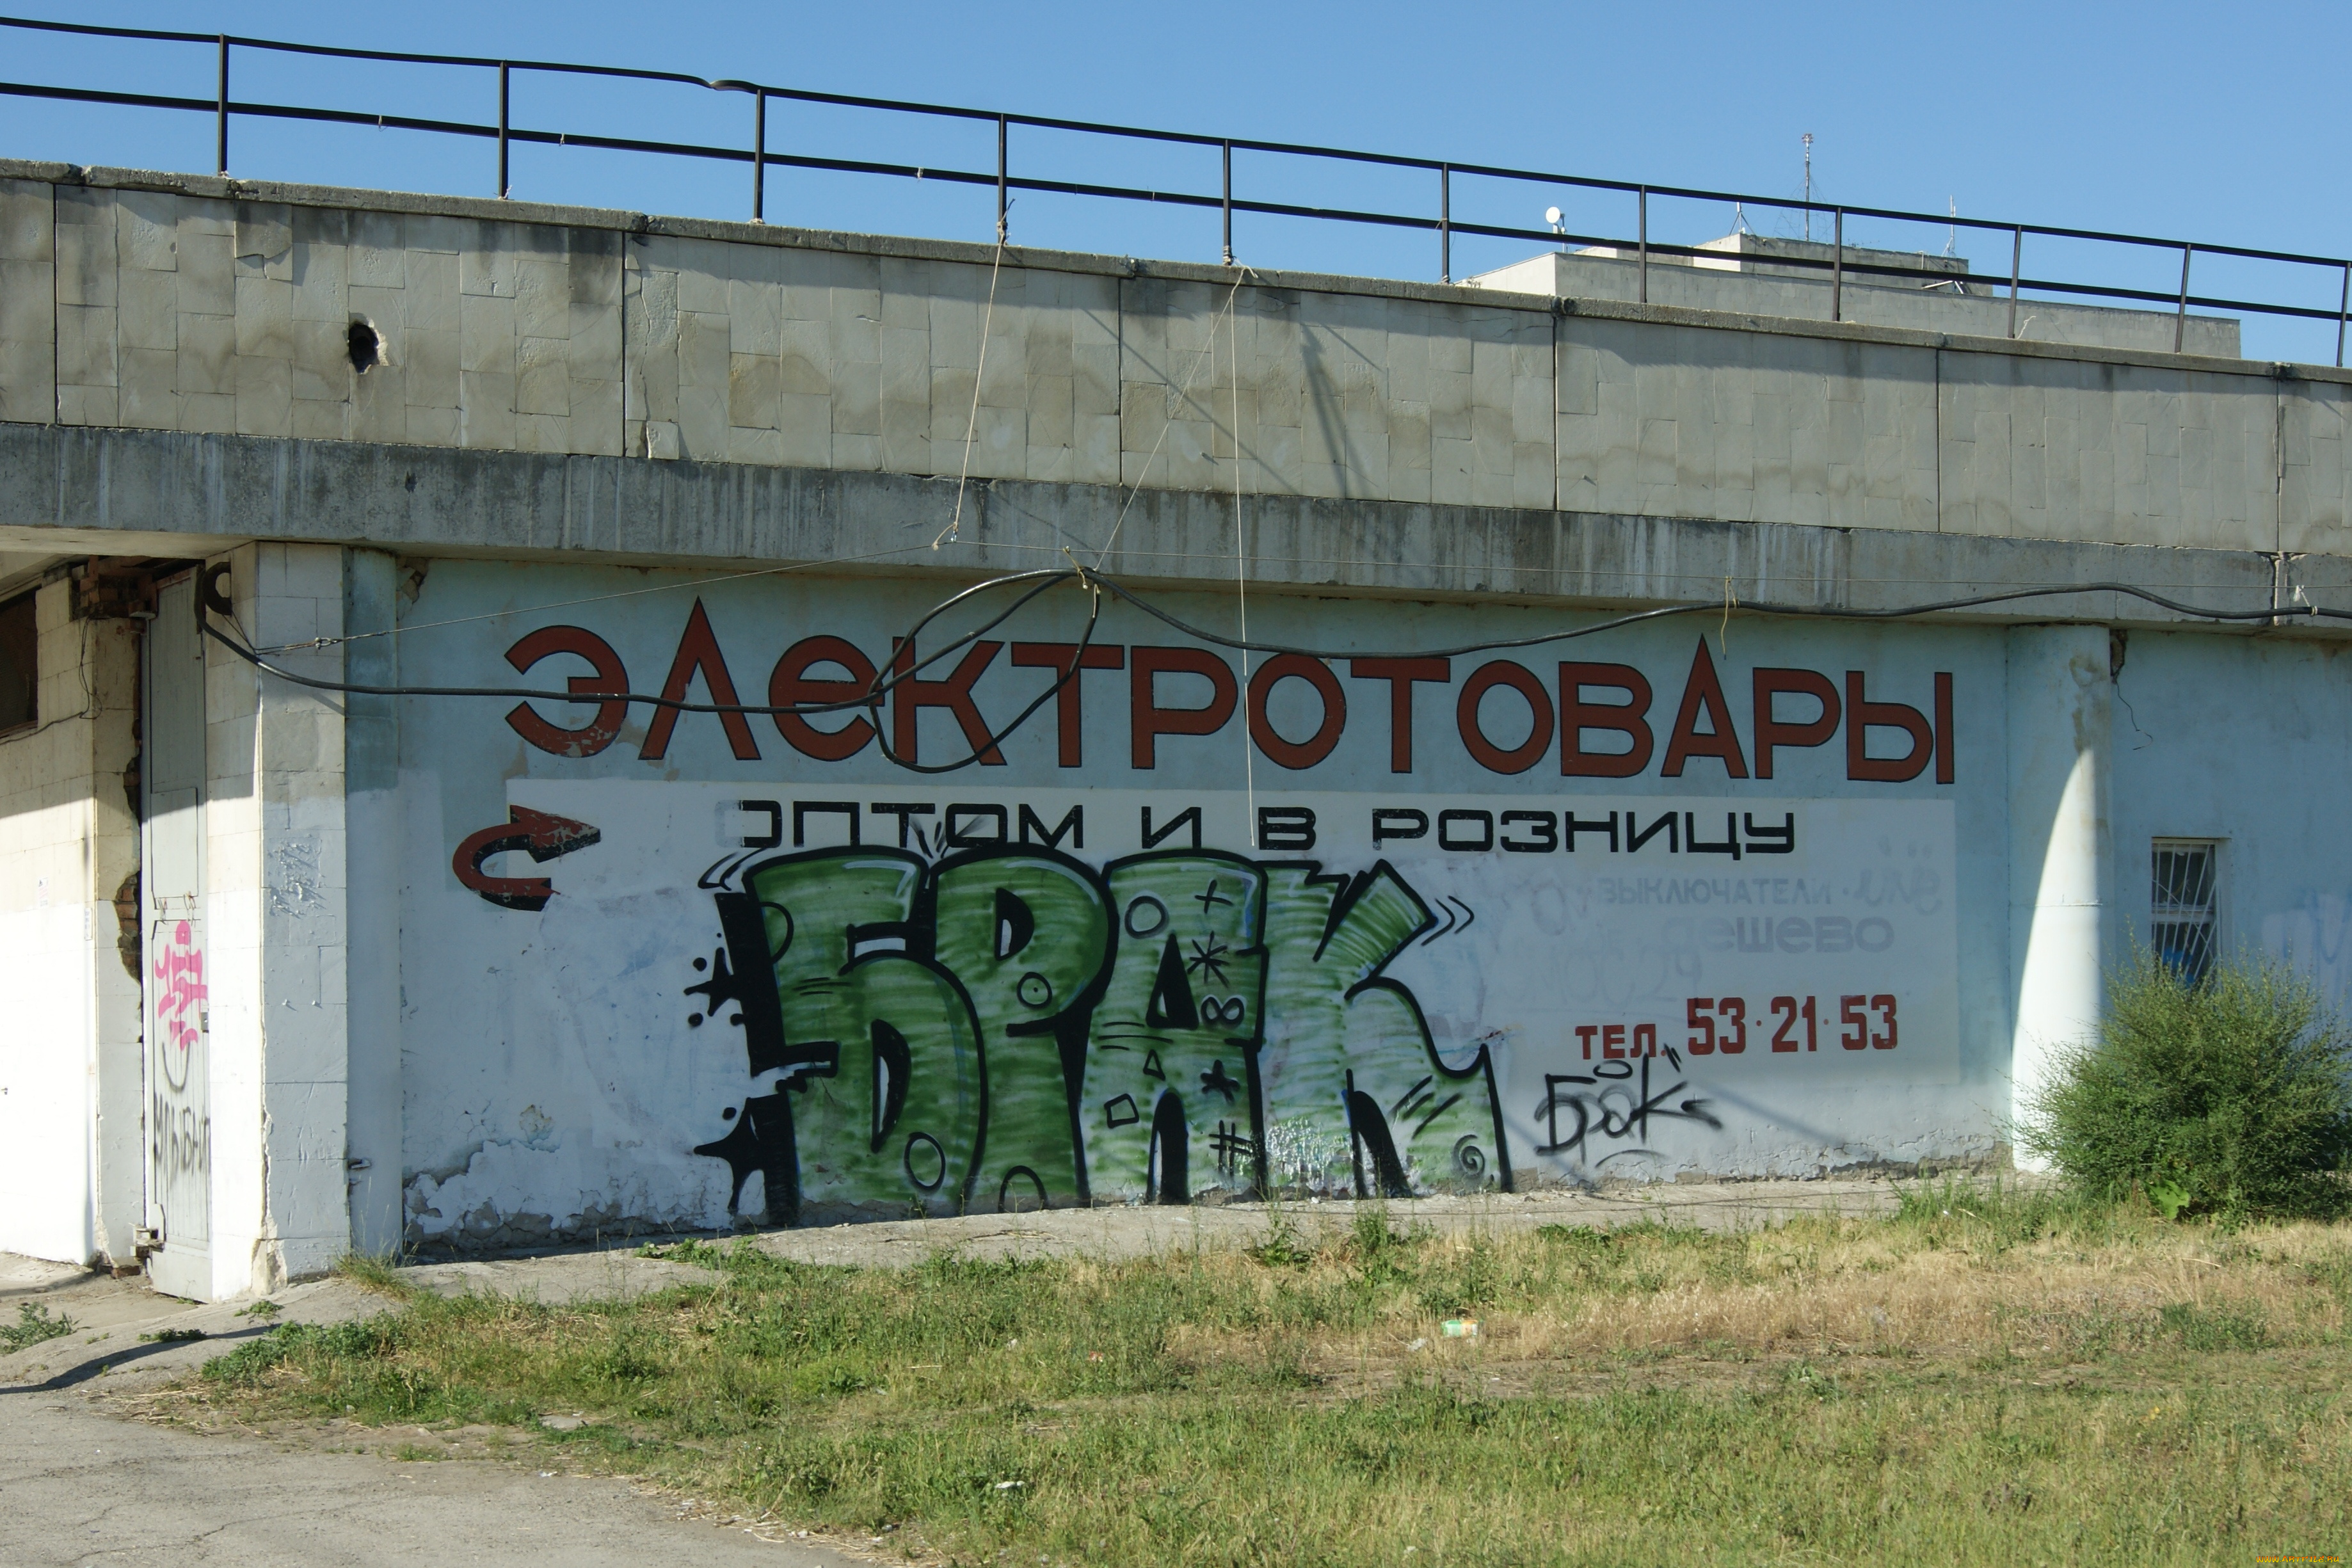 граффити, организовали, конкуренты, юмор, приколы, перила, пандус, трава, небо, рекламная, надпись, стена